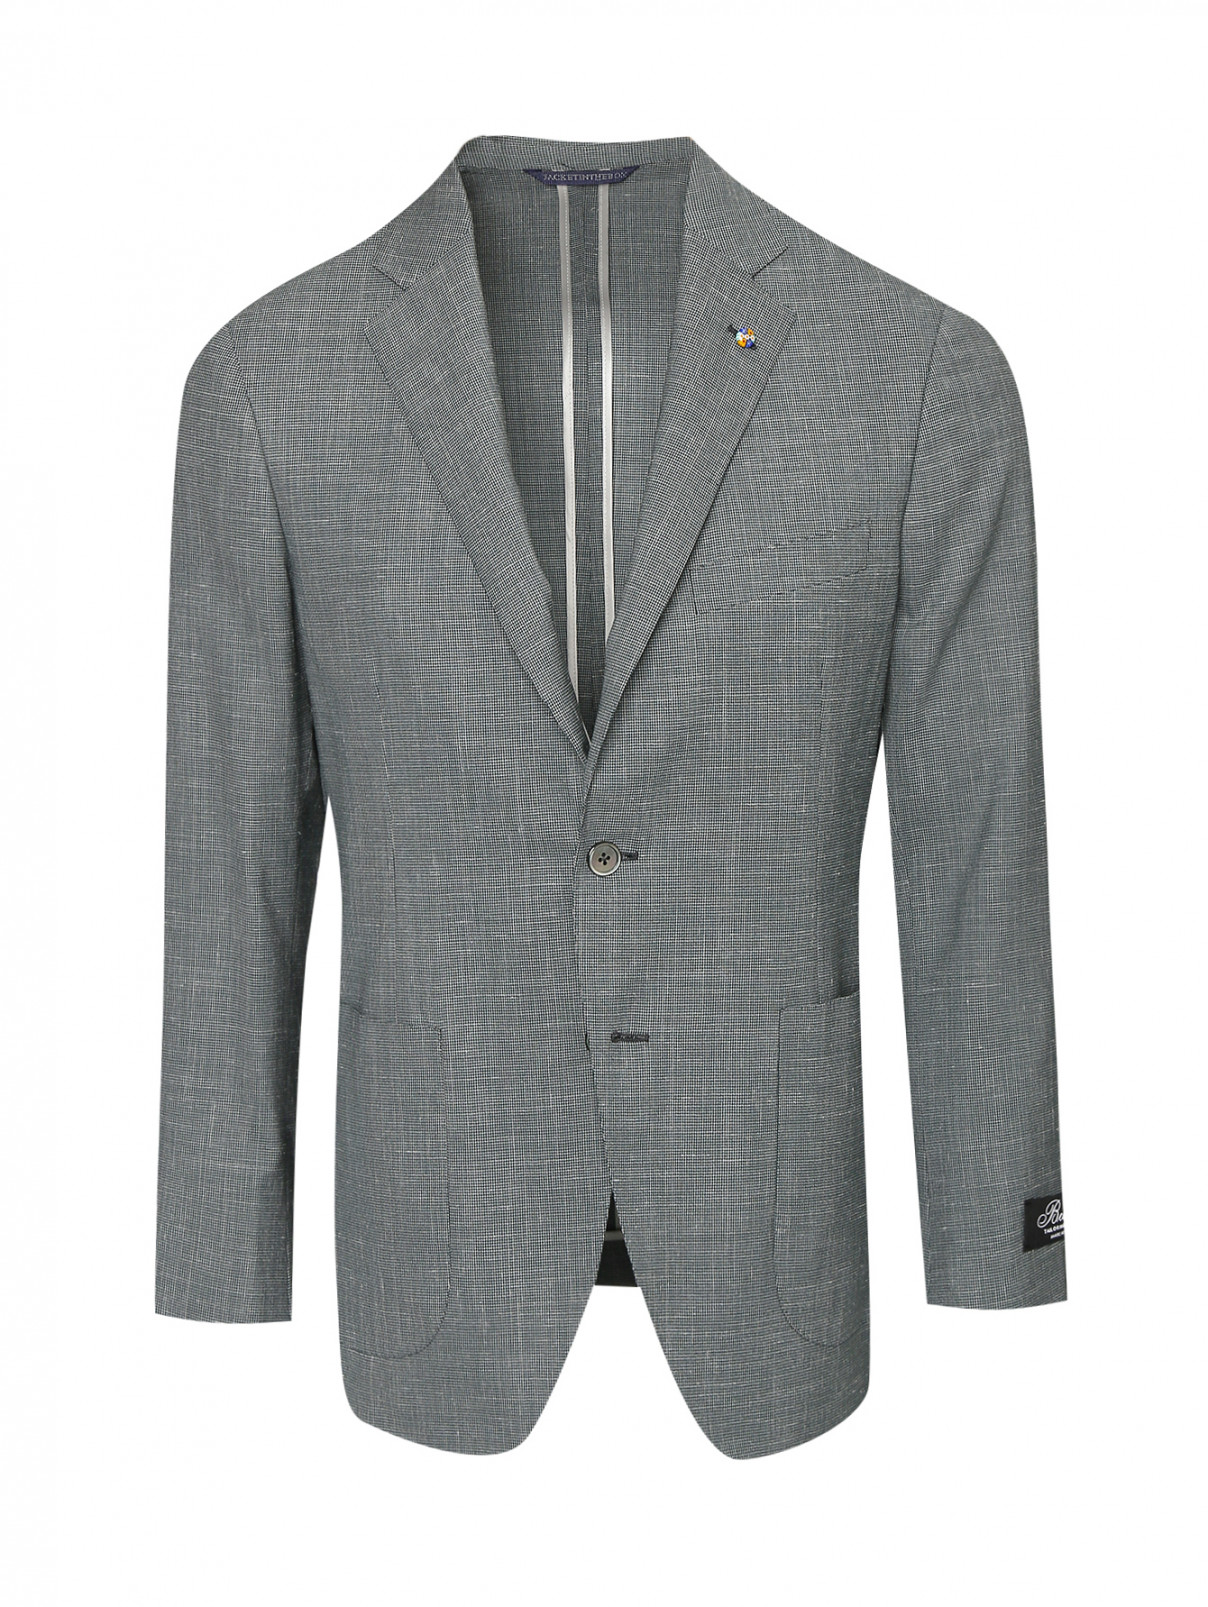 Пиджак из шерсти и шелка с узором Belvest  –  Общий вид  – Цвет:  Серый